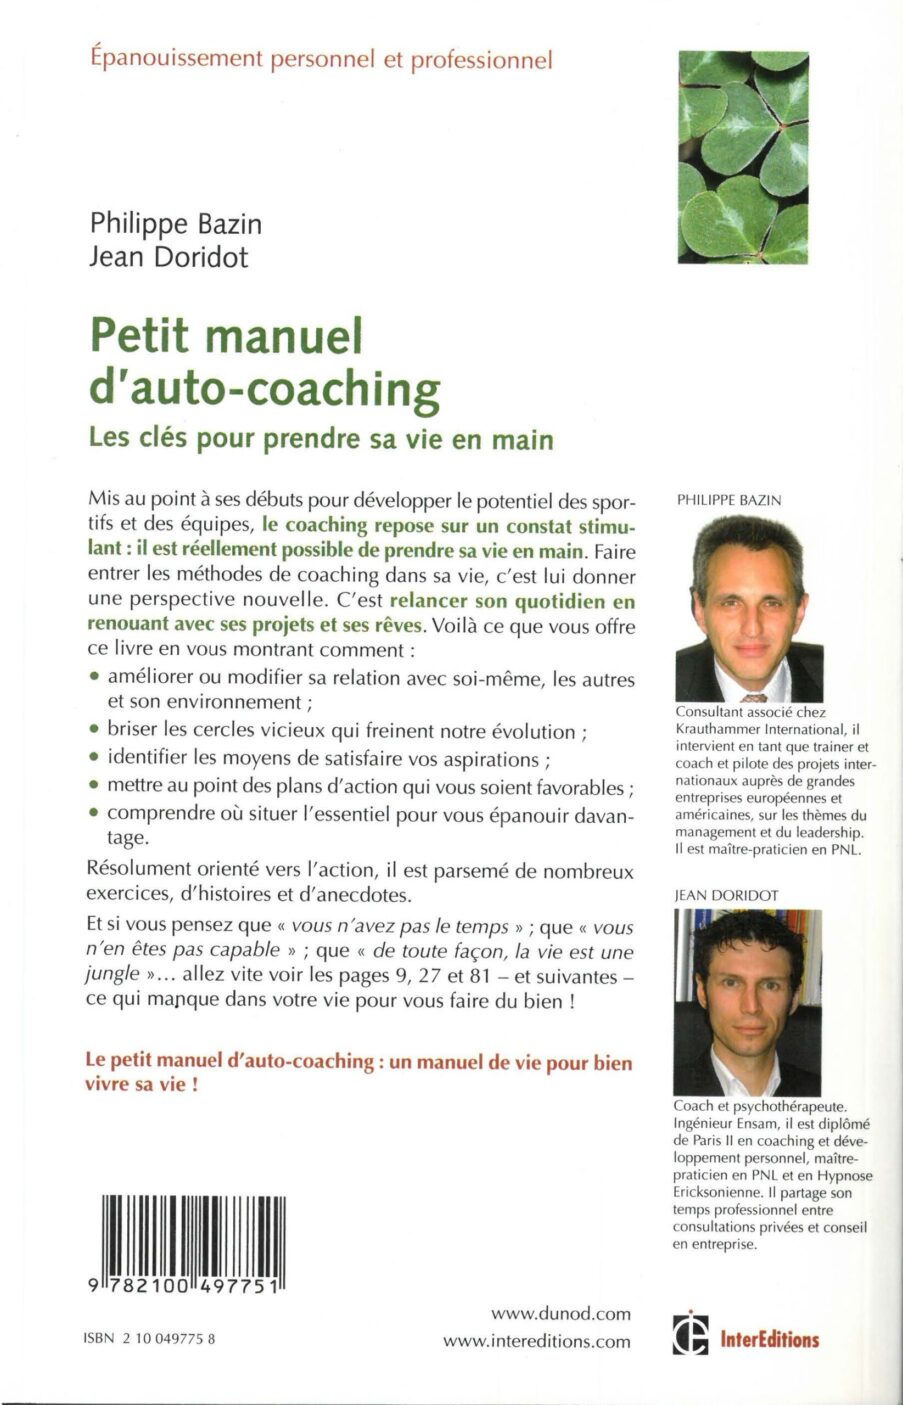 Petit manuel d'auto-coaching2